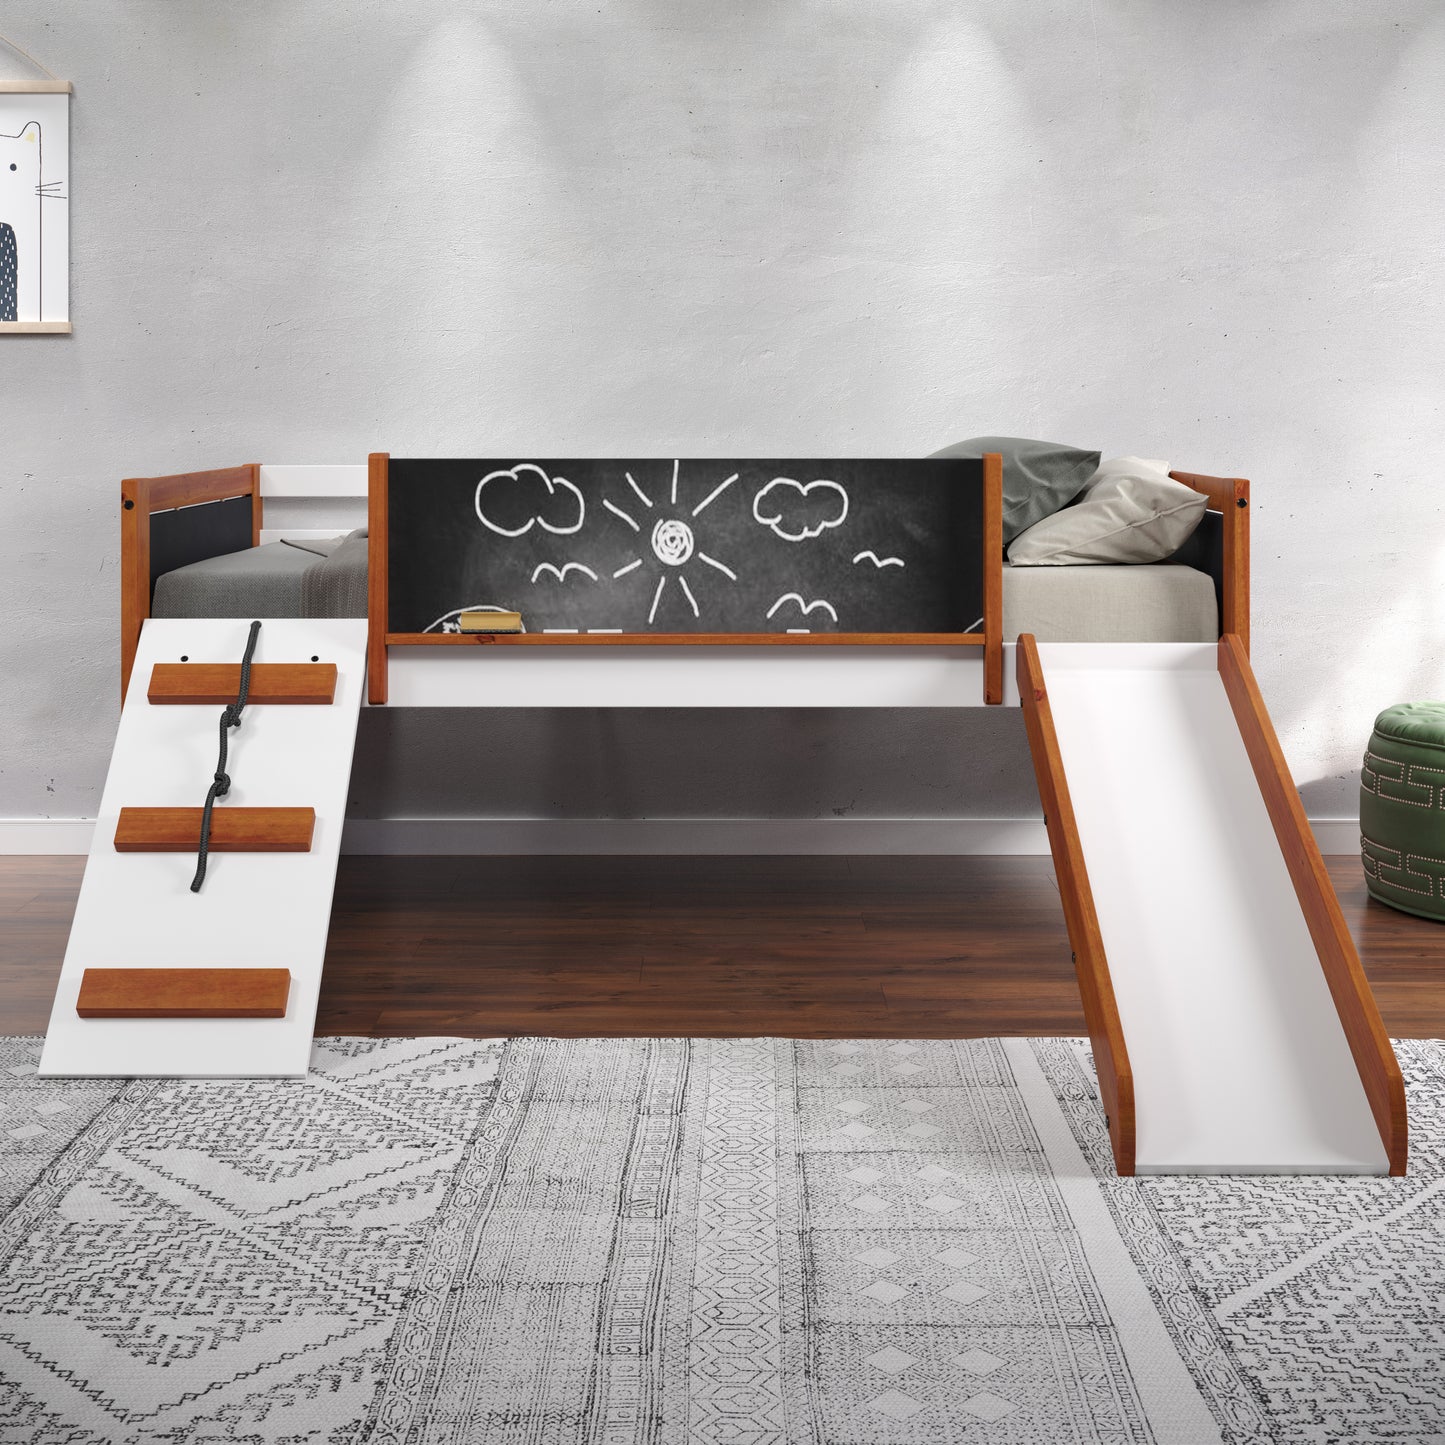 Aurea Twin Loft Bed w/Slide, Cherry Oak & White Finish BD01409